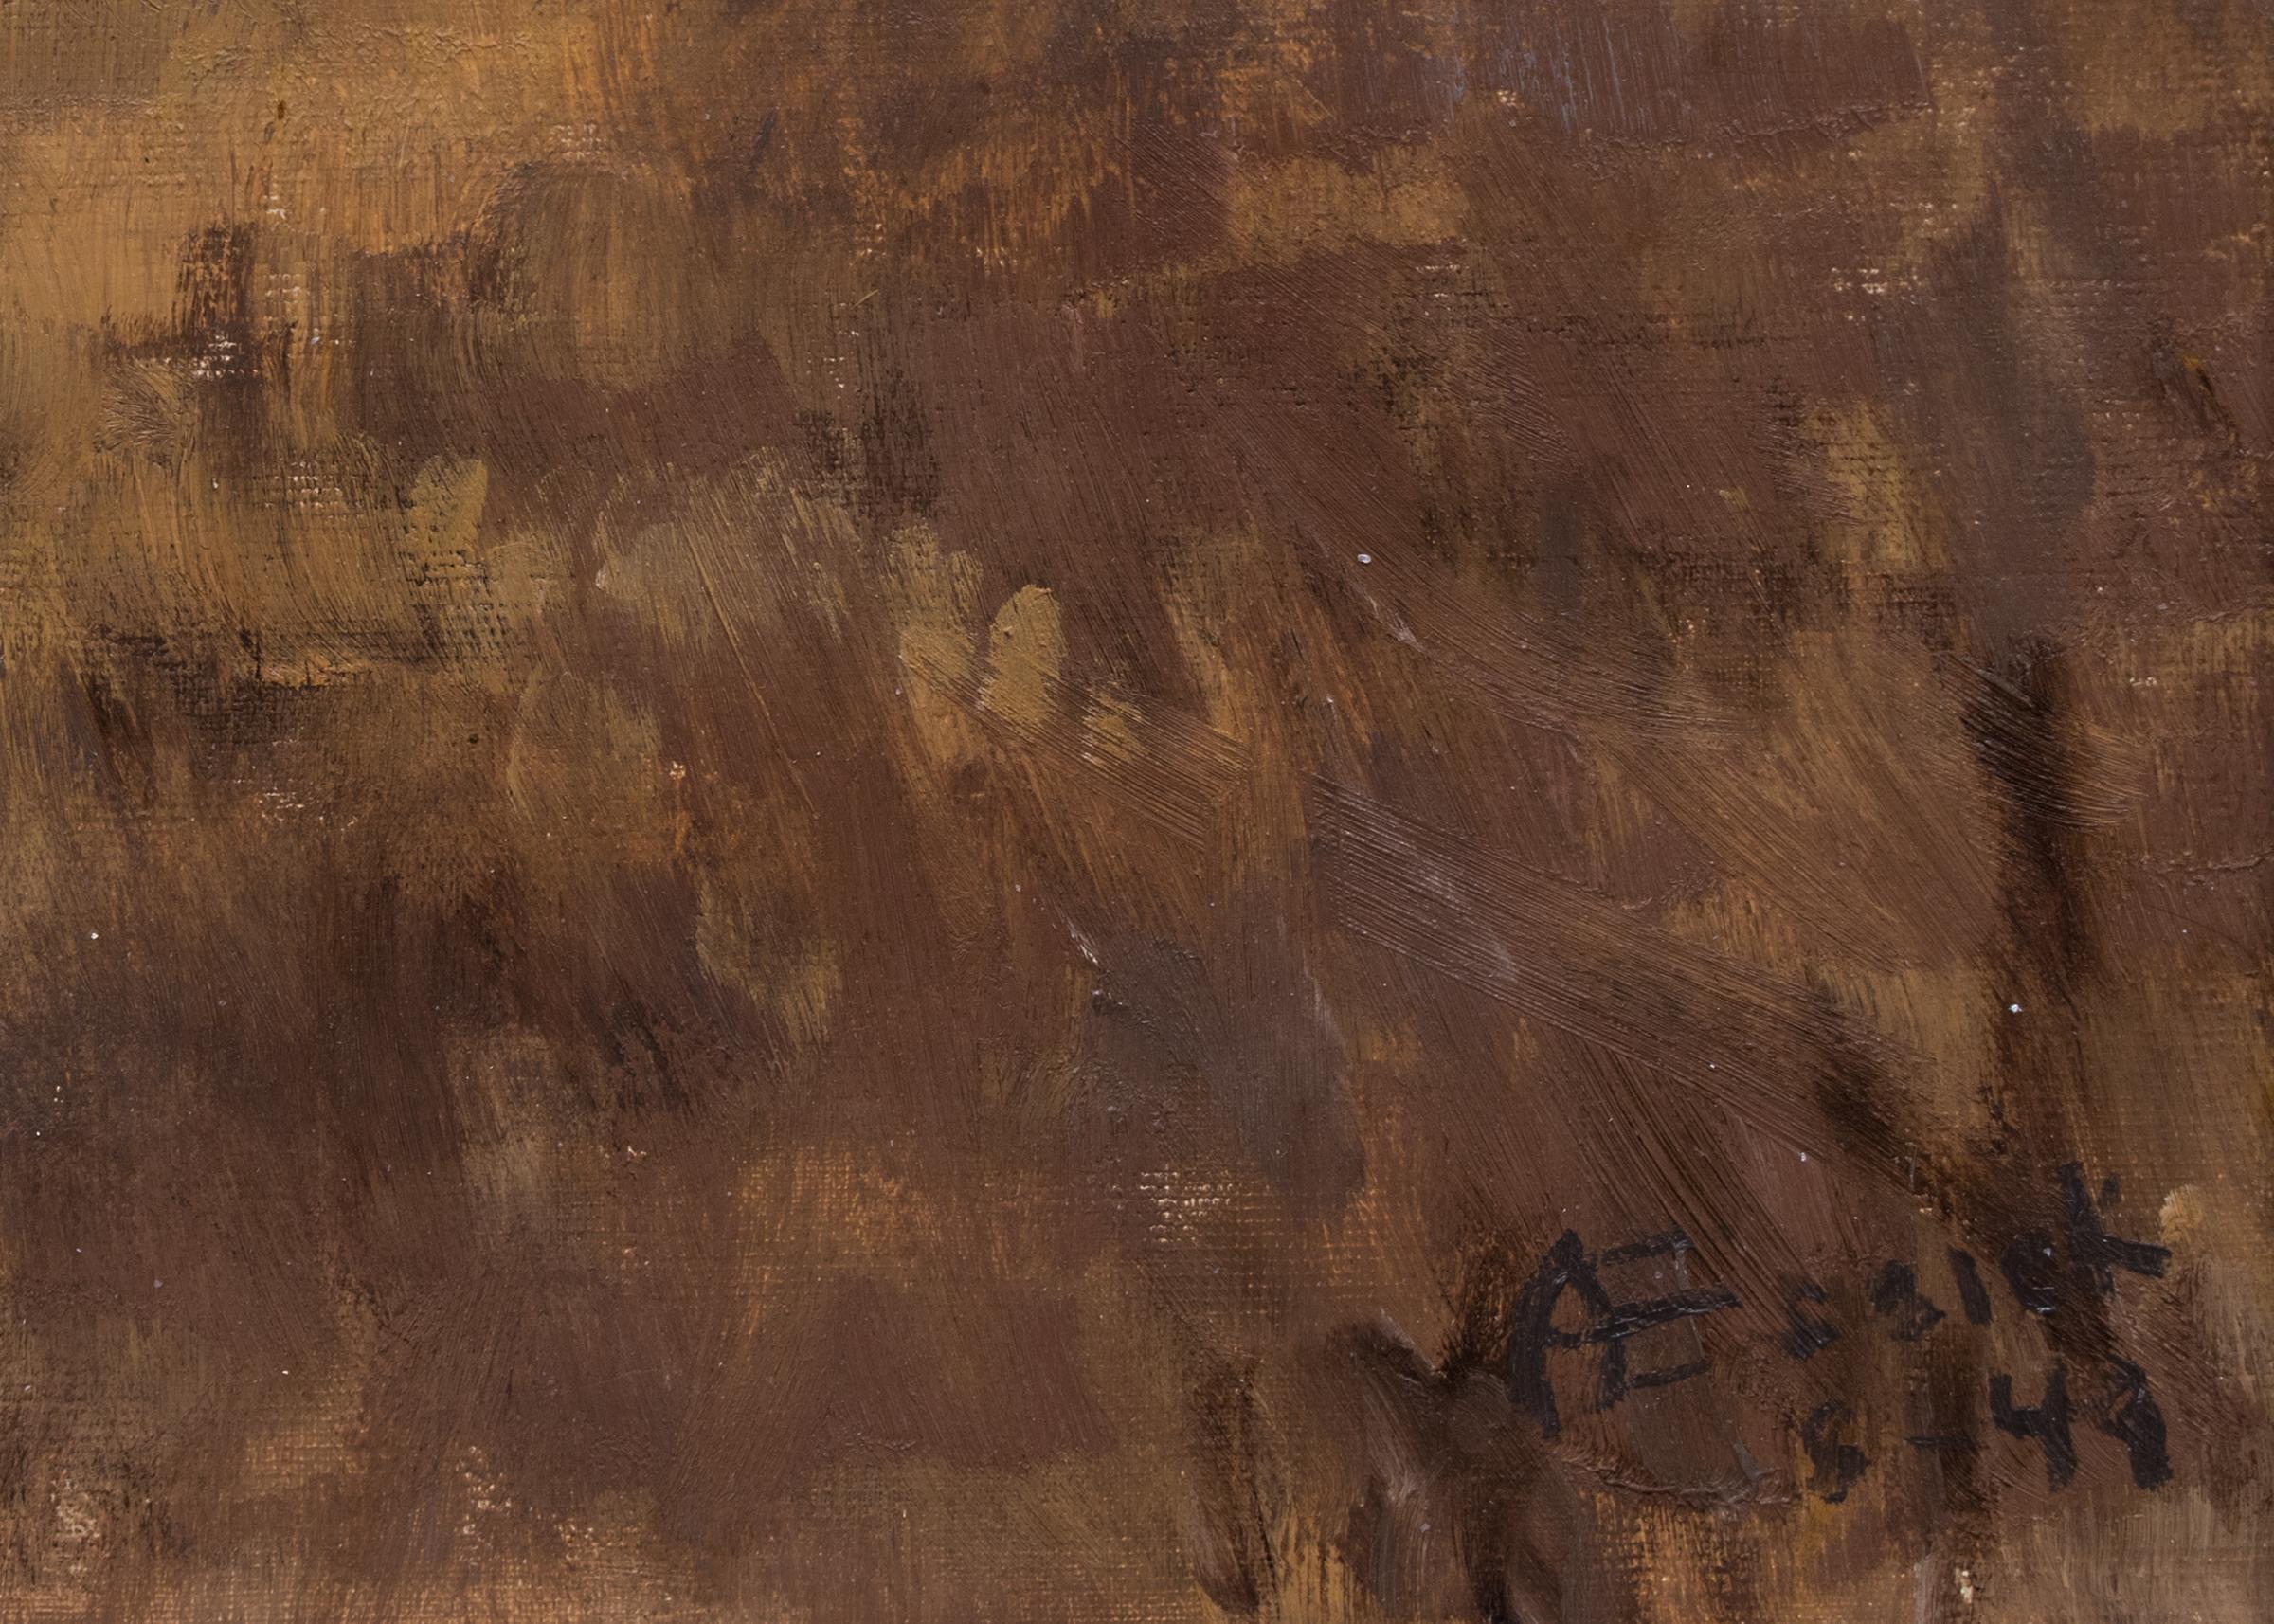 Weizenernte in Colorado, Amerikanische Szene Landschaft Ölgemälde, Brown, Gray (Amerikanischer Impressionismus), Painting, von Anna Essick